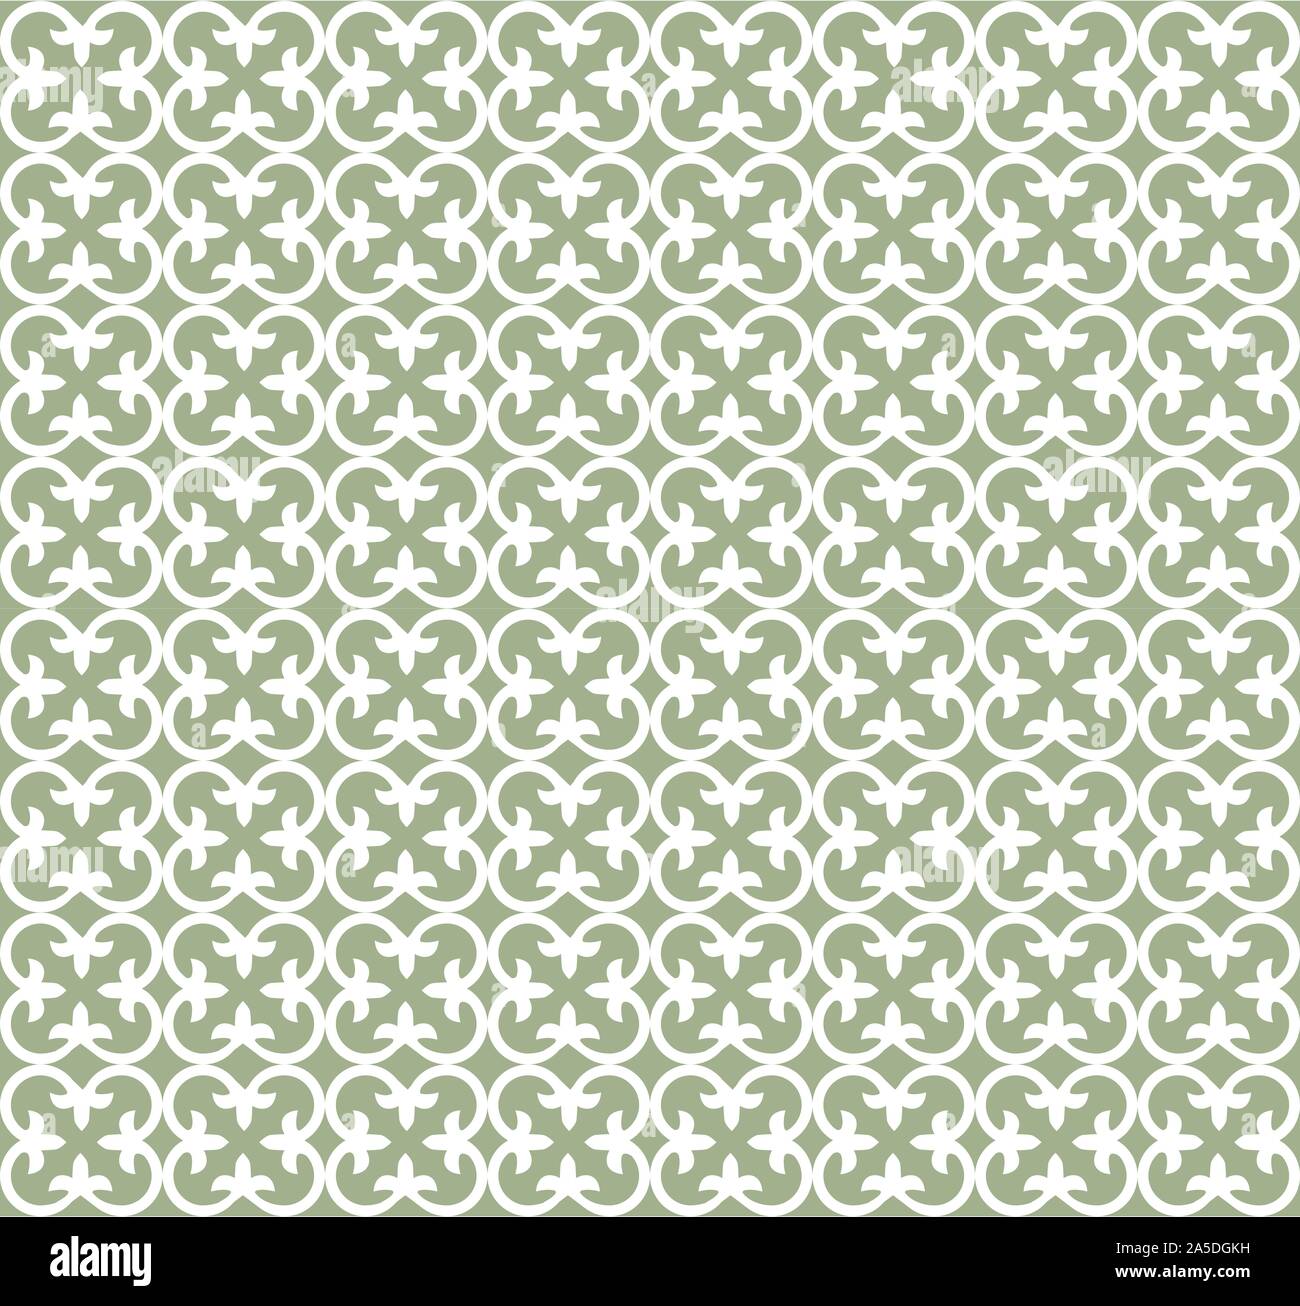 Motif carreaux floral seamless Vector Illustration de Vecteur